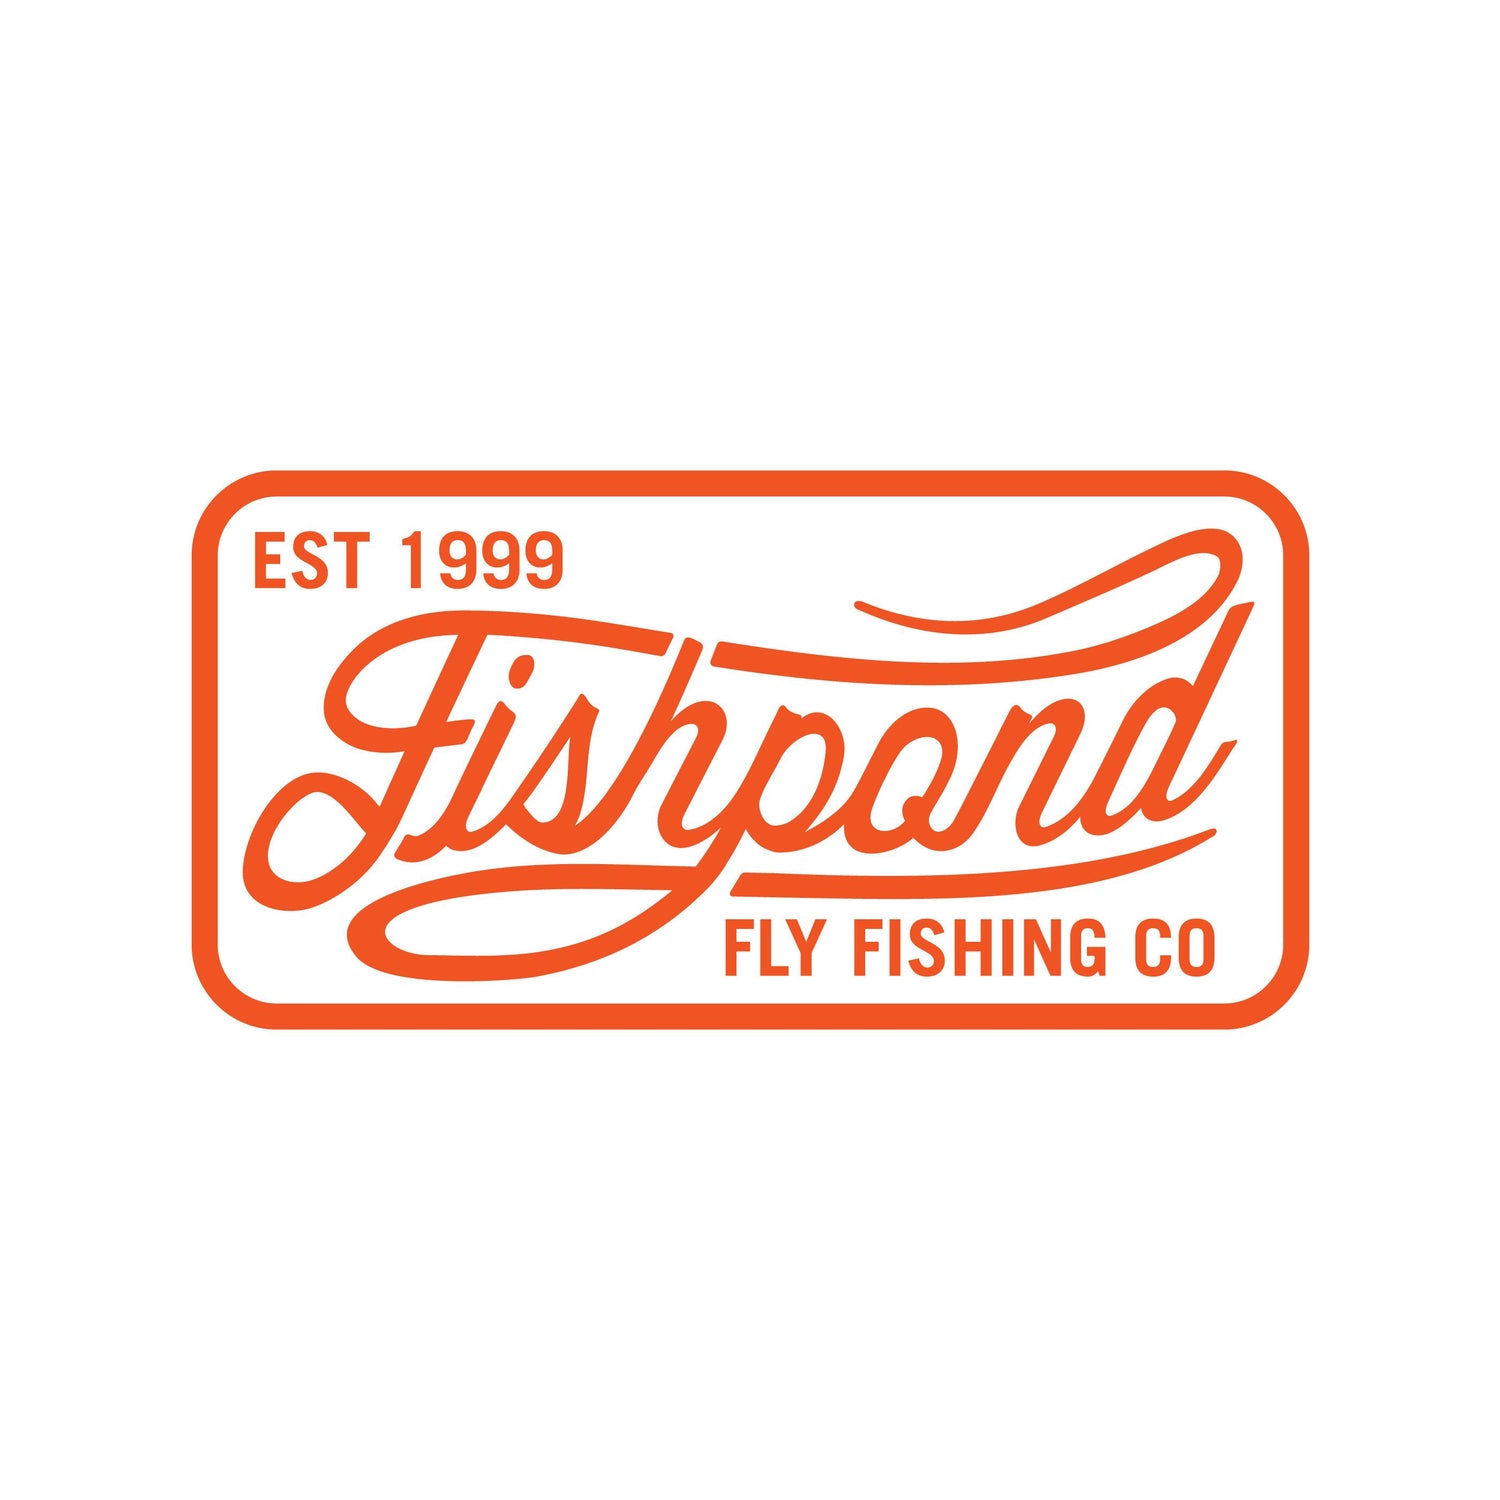 Thermal Die Cut Sticker - Heritage 5 – Fishpond